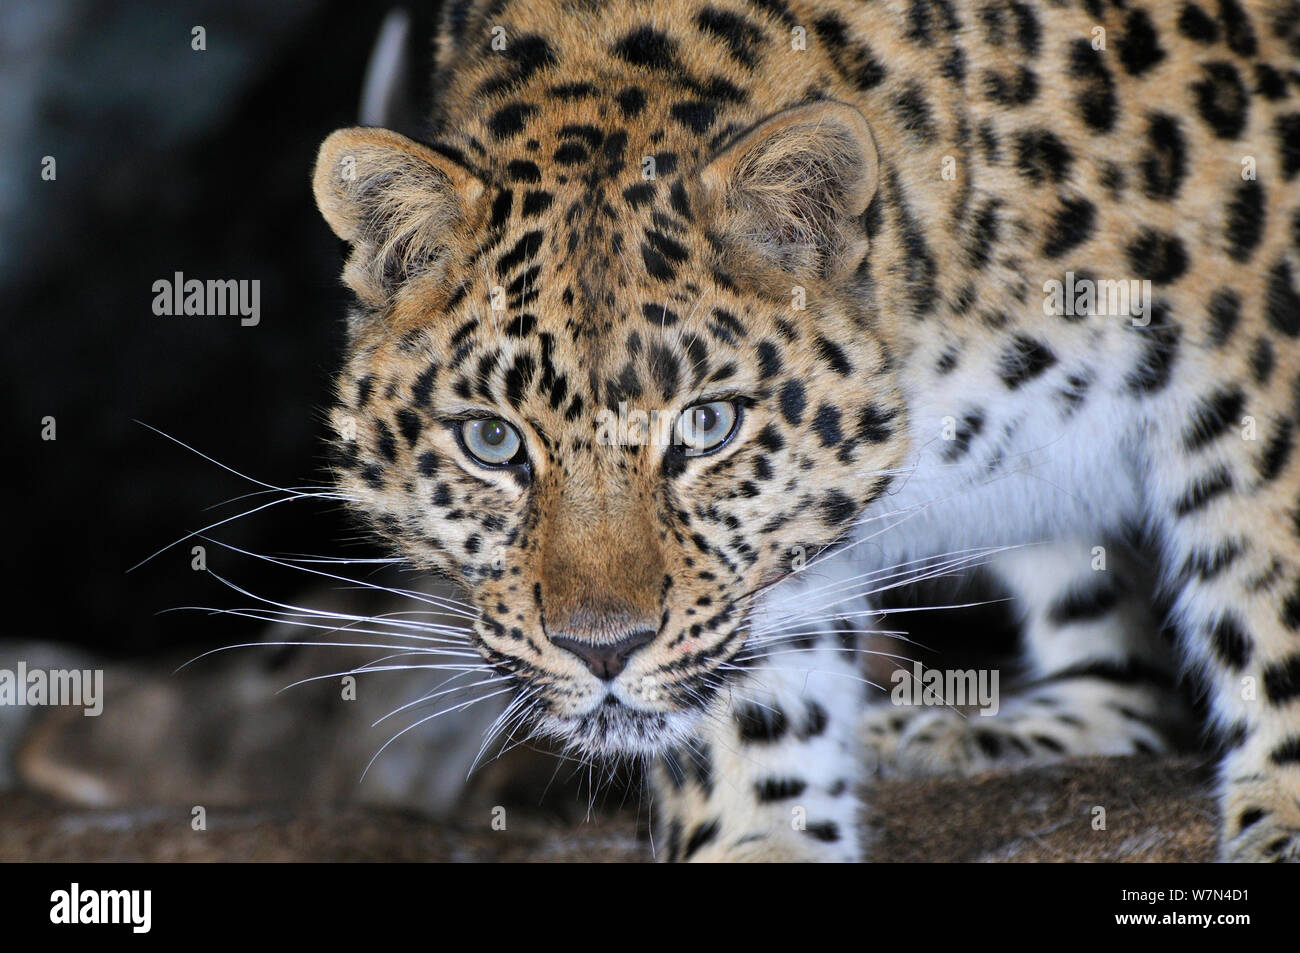 Amur Leopard (Panthera pardus orientalis) ritratto, Kedrovaya Pad riserva, Primorskiy krai, estremo oriente russo, gennaio, criticamente le specie in via di estinzione. Foto Stock